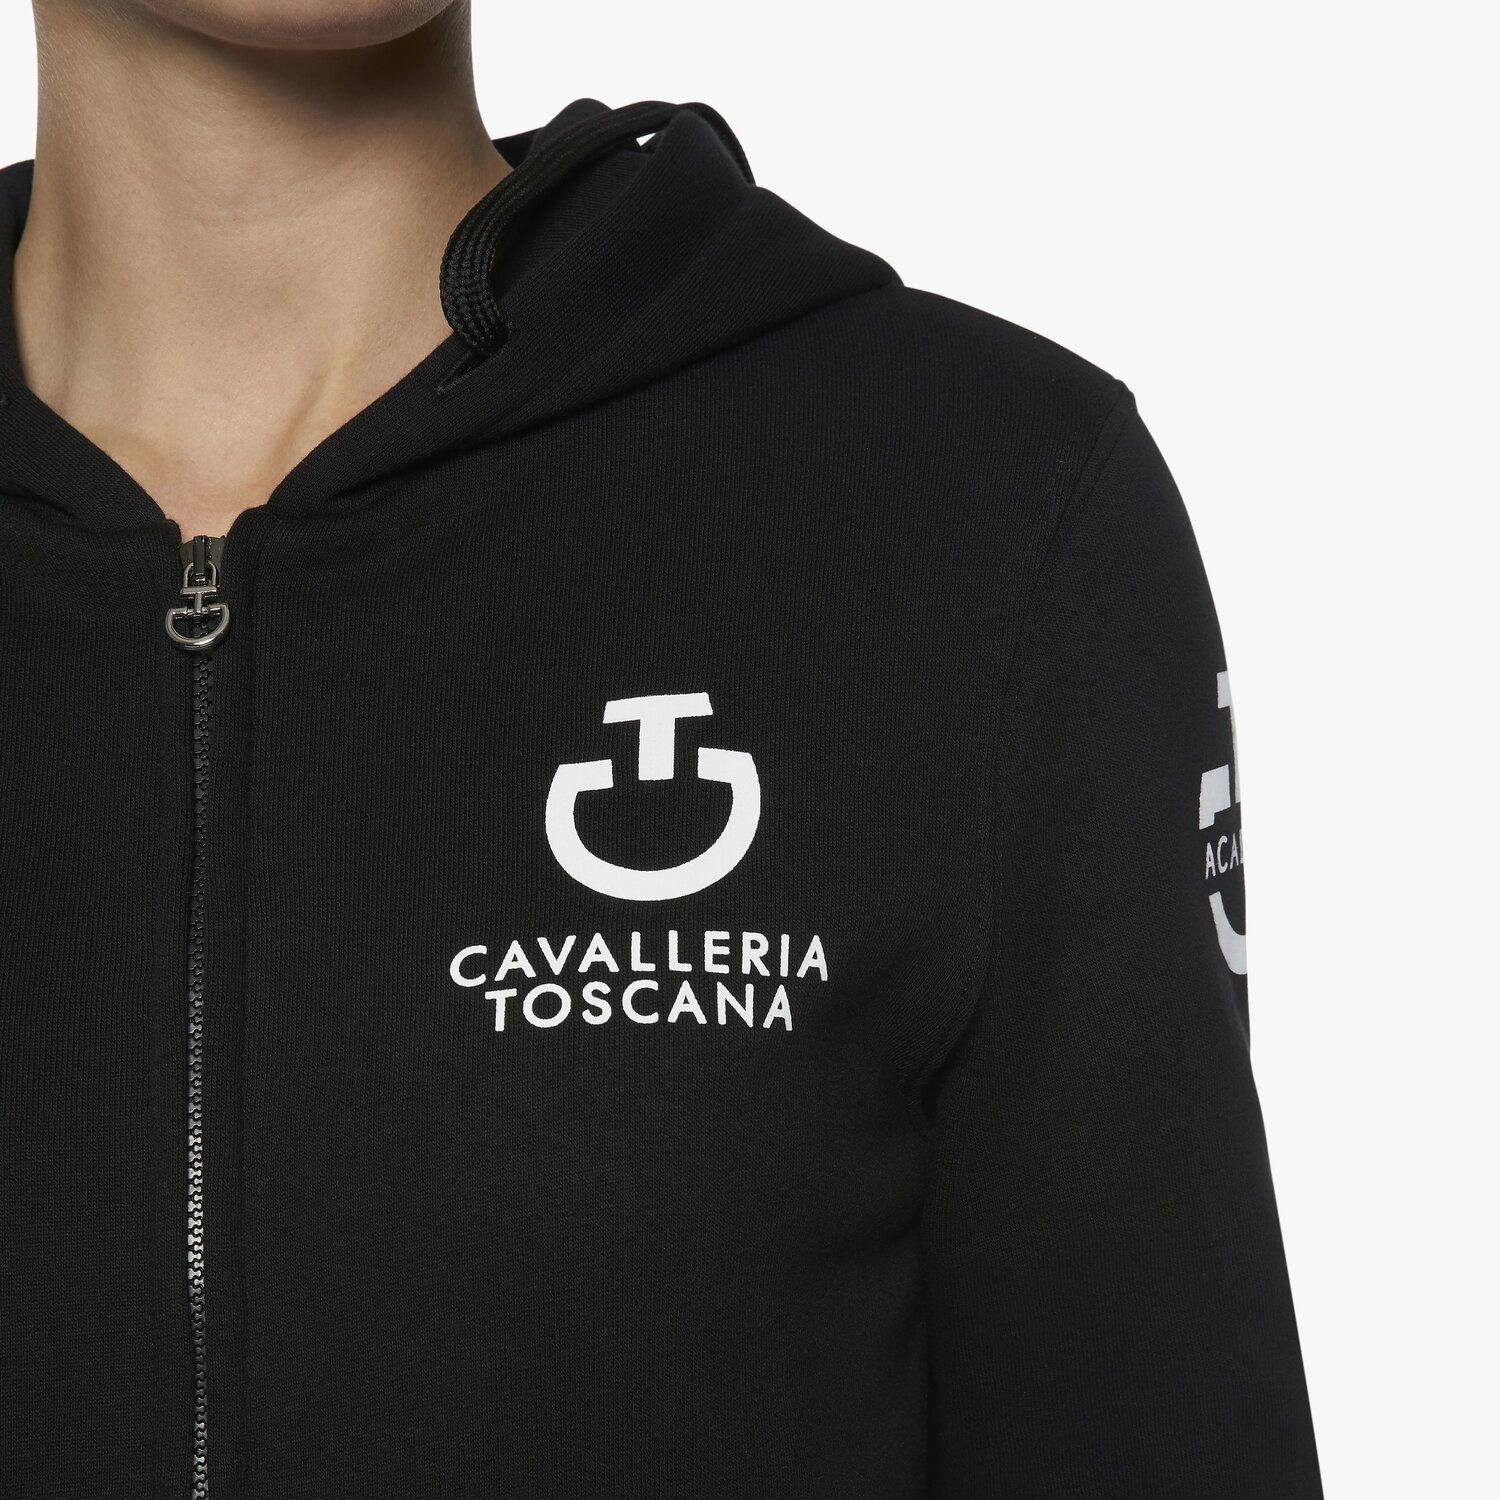 Cavalleria Toscana Women's Zip Sweatshirt BLACK-5